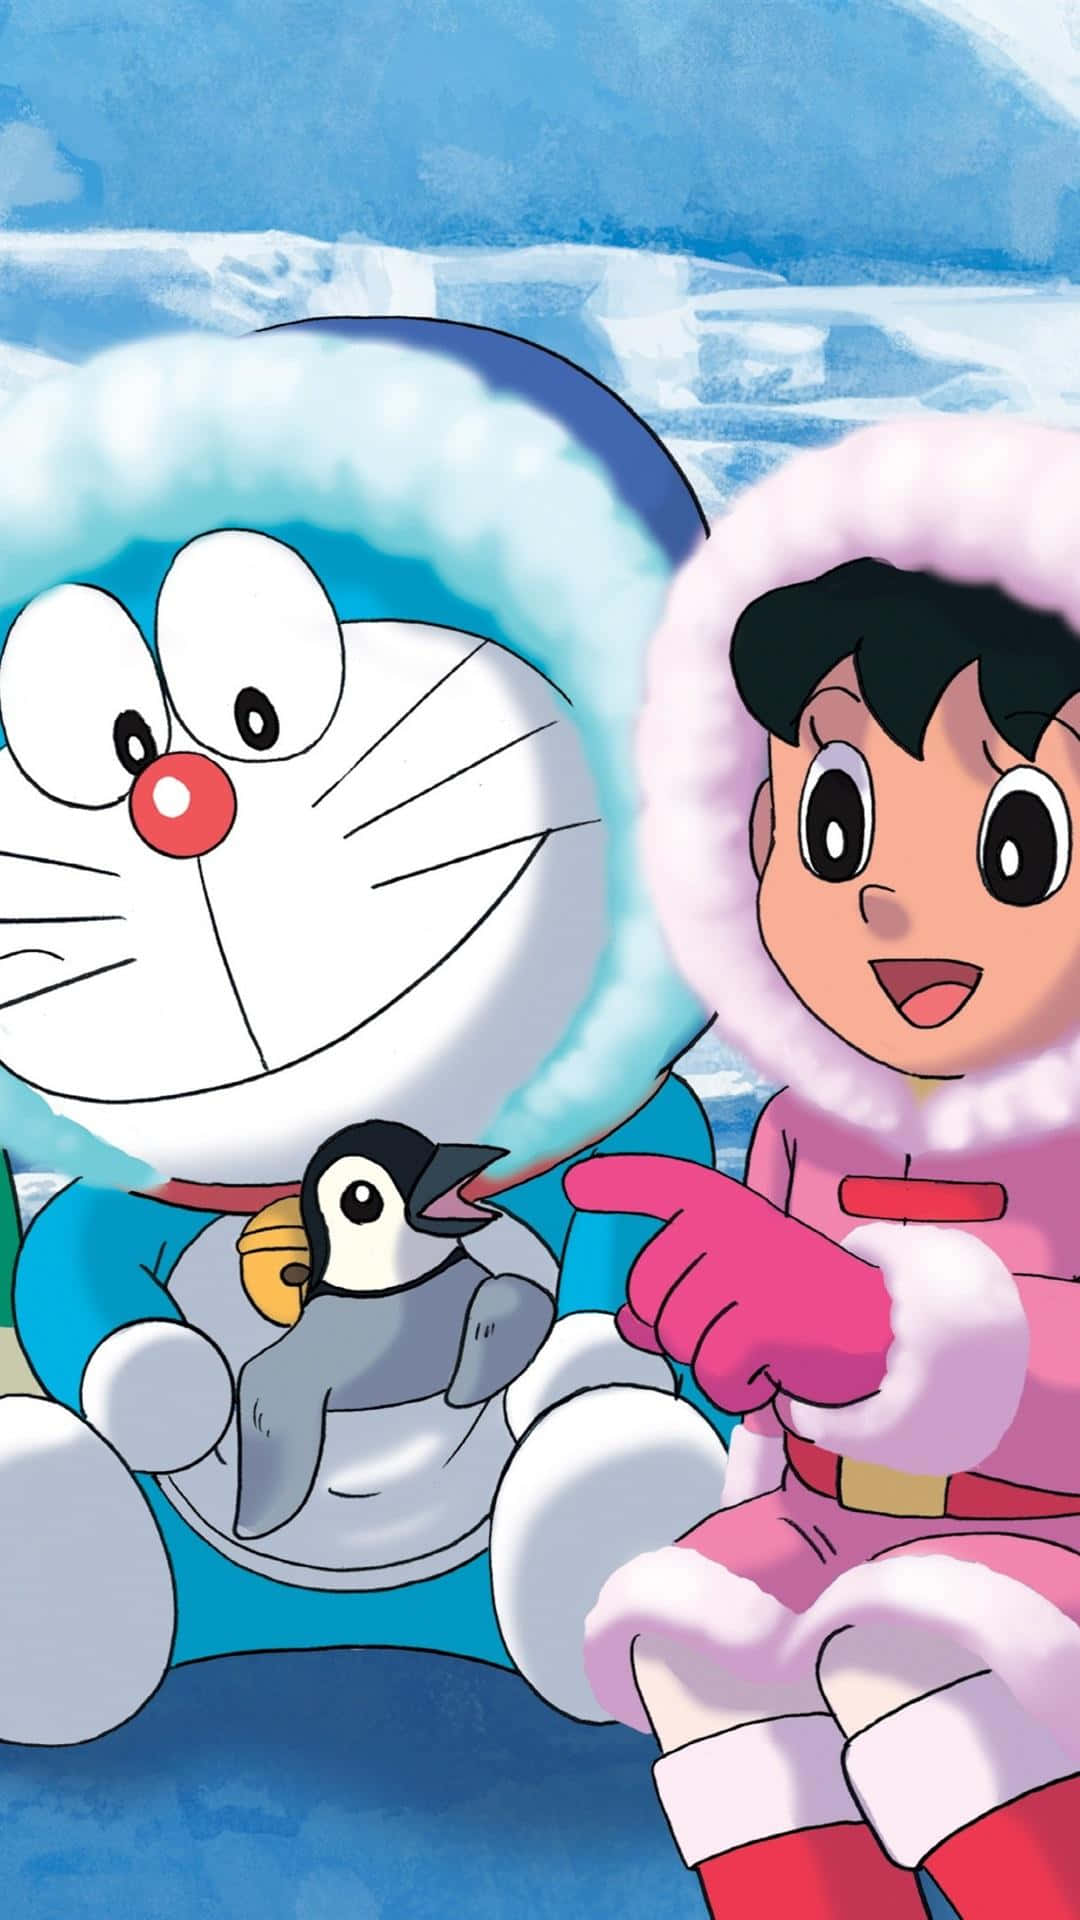 Roligaäventyr Väntar I Doraemons Magiska Värld.